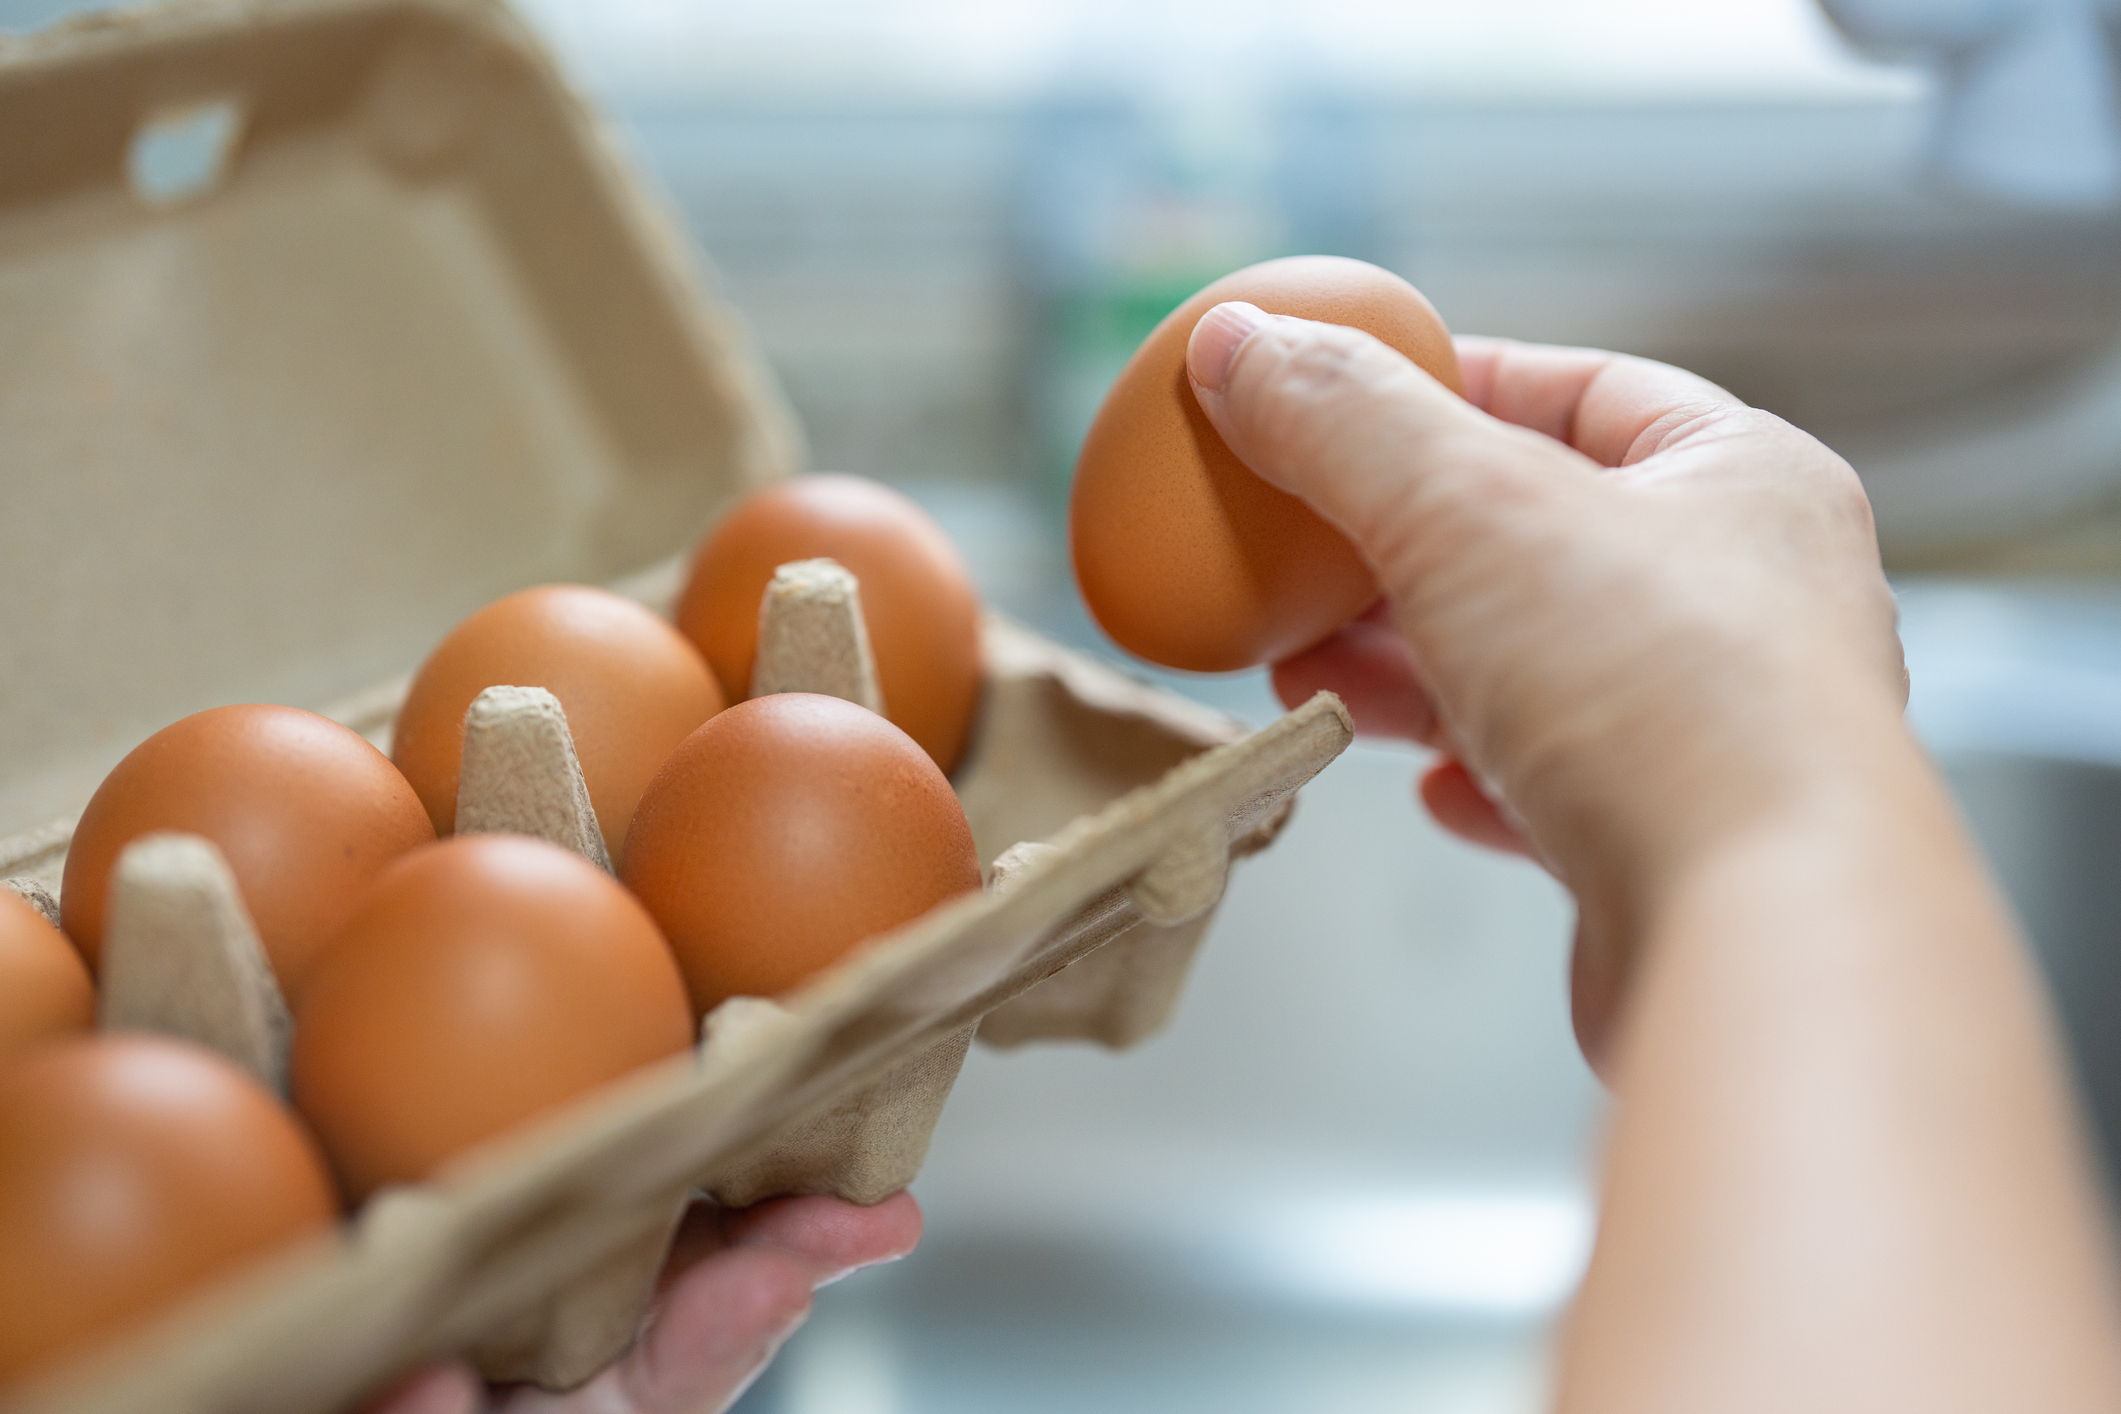 Mennyi kalória van 100 gramm nyers tojásban?